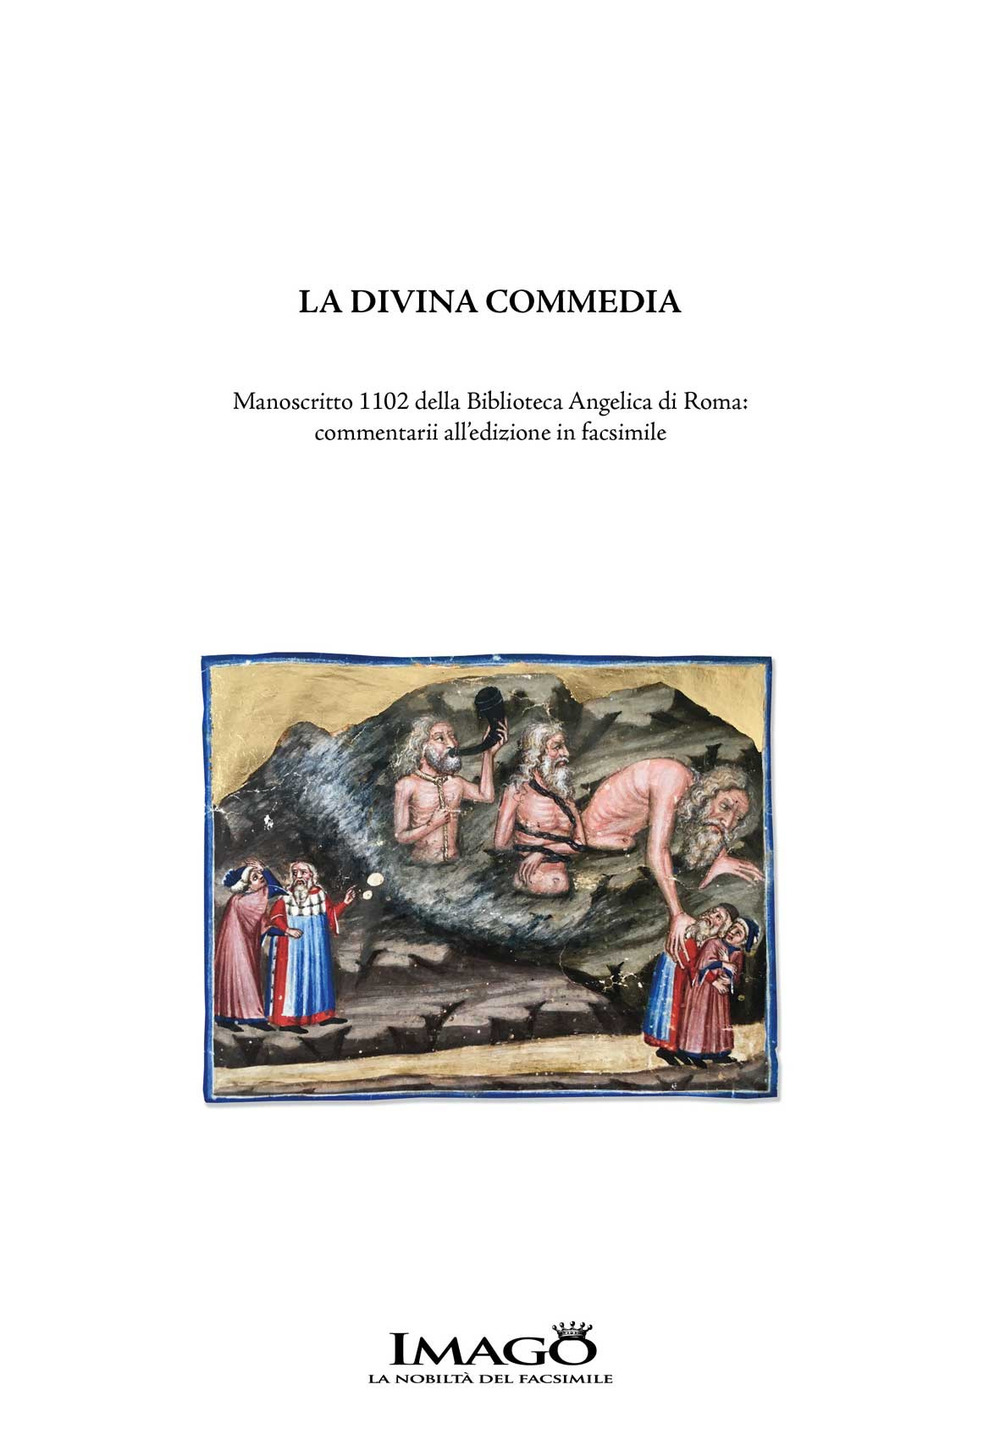 La Divina Commedia. Manoscritto 1102 della Biblioteca Angelica di Roma: commentarii all'edizione facsimile. Ediz. critica